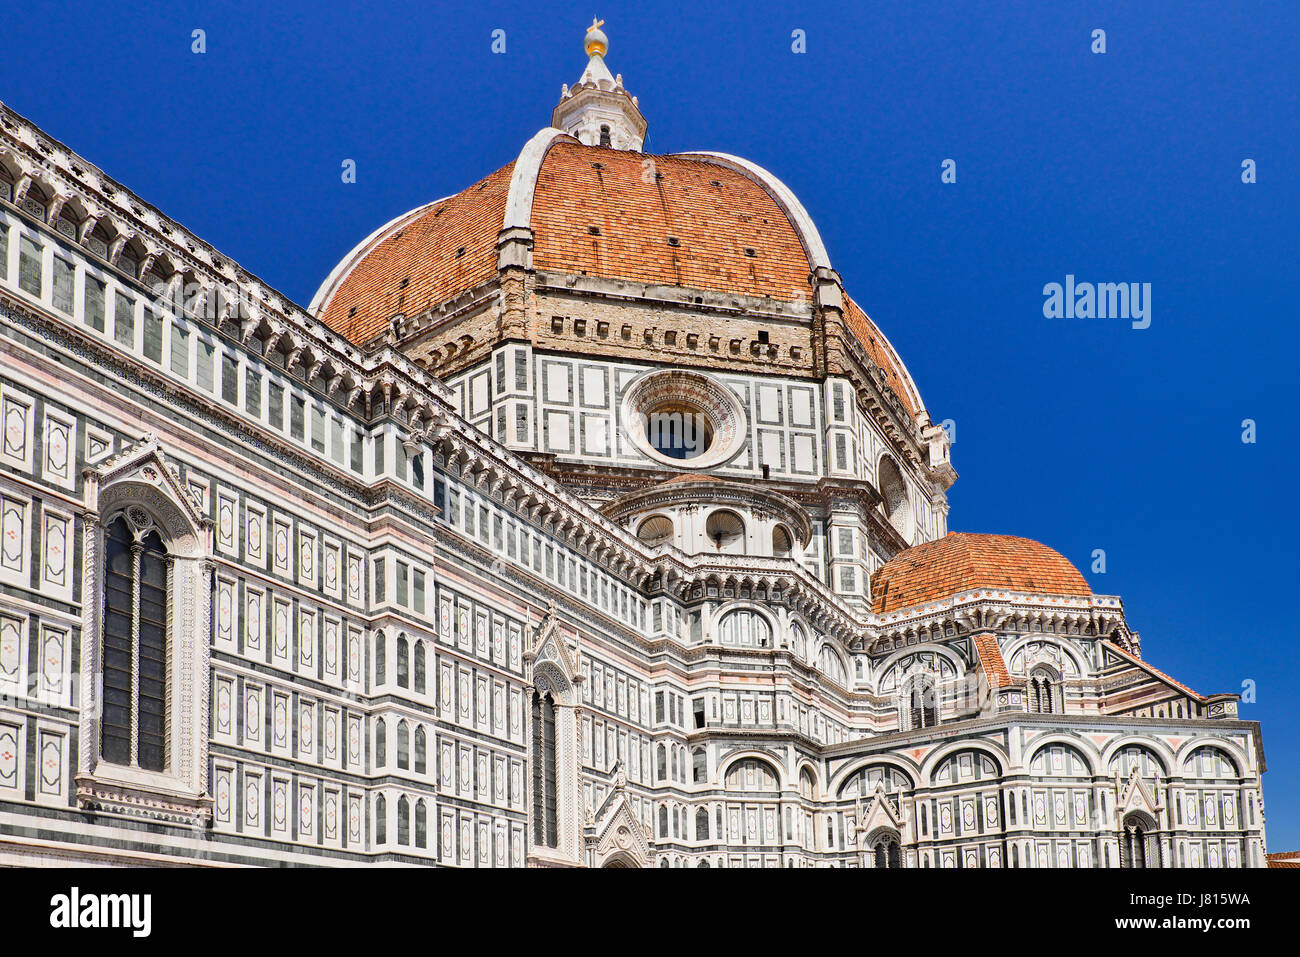 Italien, Toskana, Florenz, Dom oder Dom auch bekannt als Santa Maria del Fiorel, Blick auf die Kuppel aus dem Boden nach oben. Stockfoto